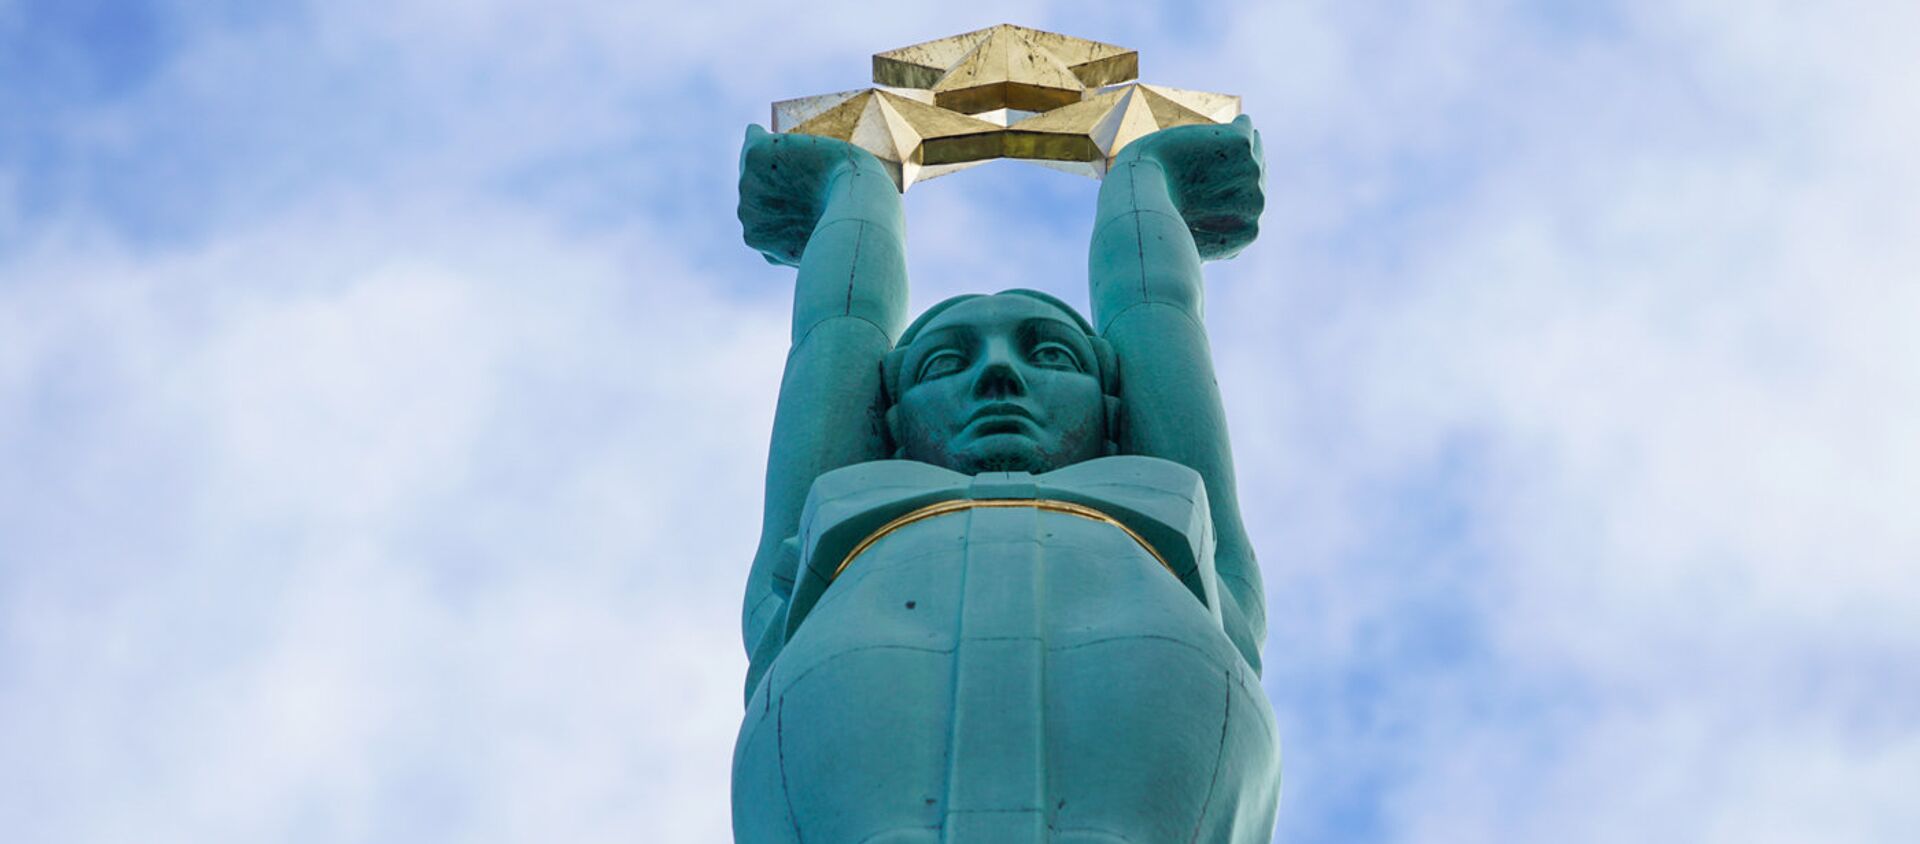 Скульптура Милды с тремя звездами на Памятнике Свободы - Sputnik Latvija, 1920, 02.11.2020